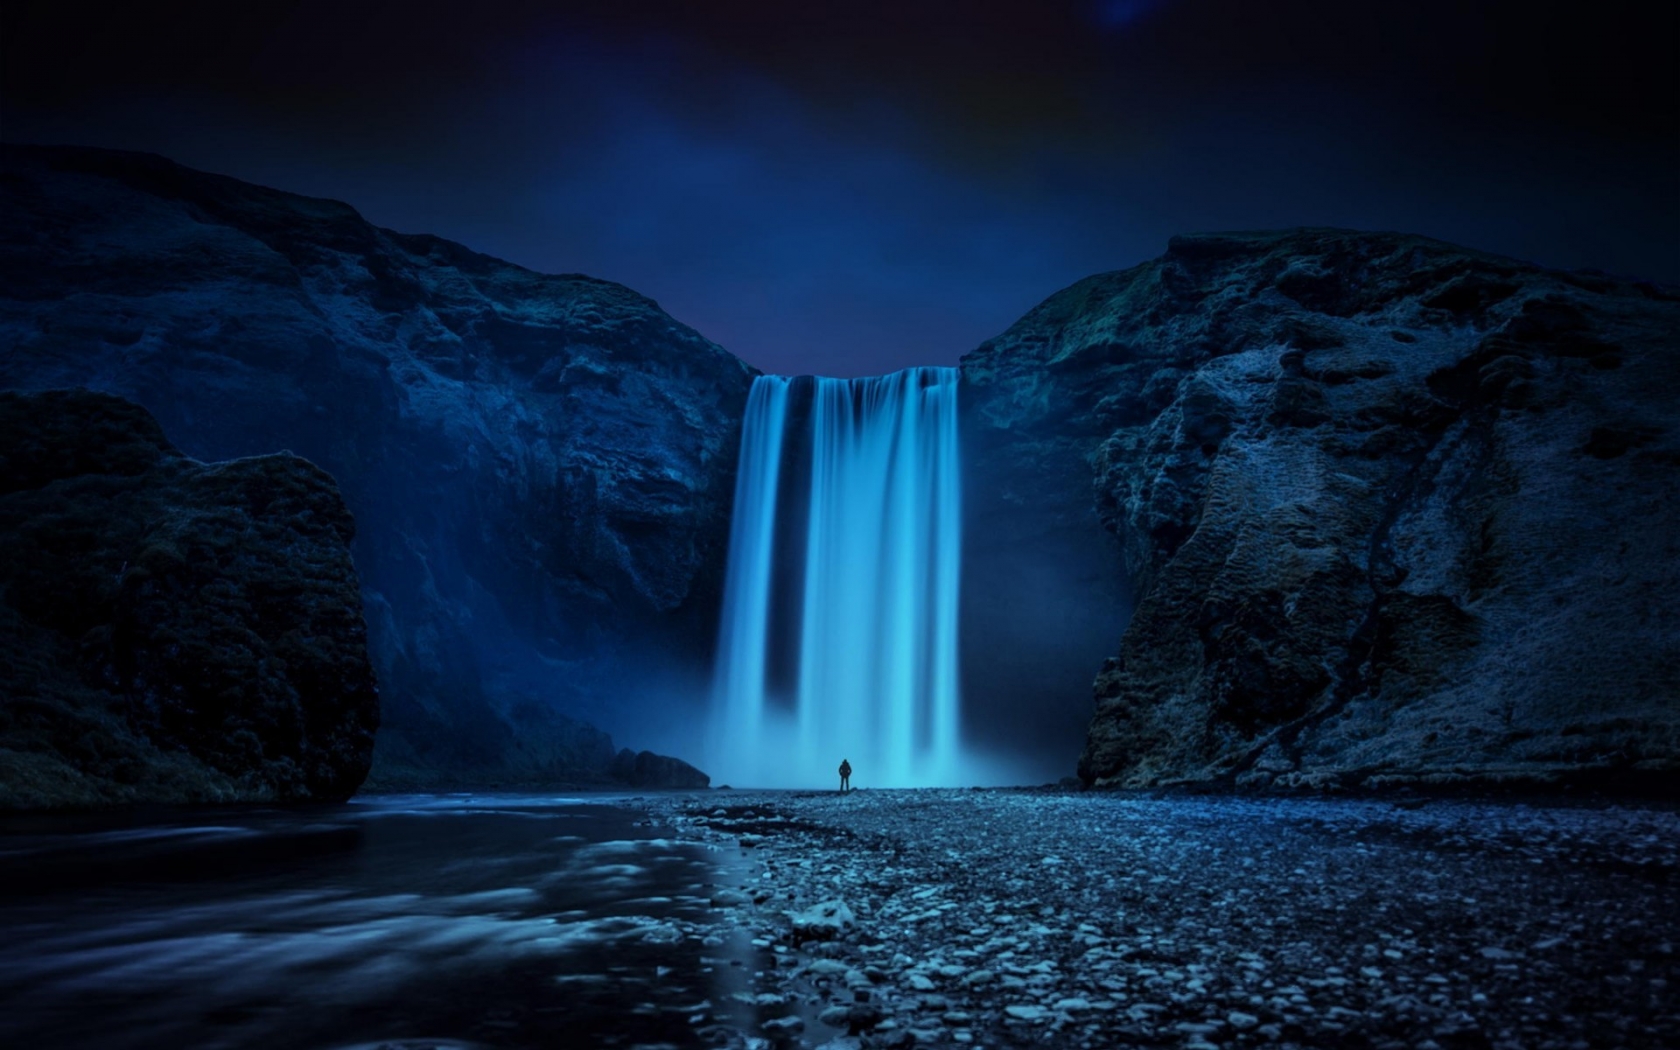 Beautiful Skogafoss Waterfall for 1680 x 1050 widescreen resolution